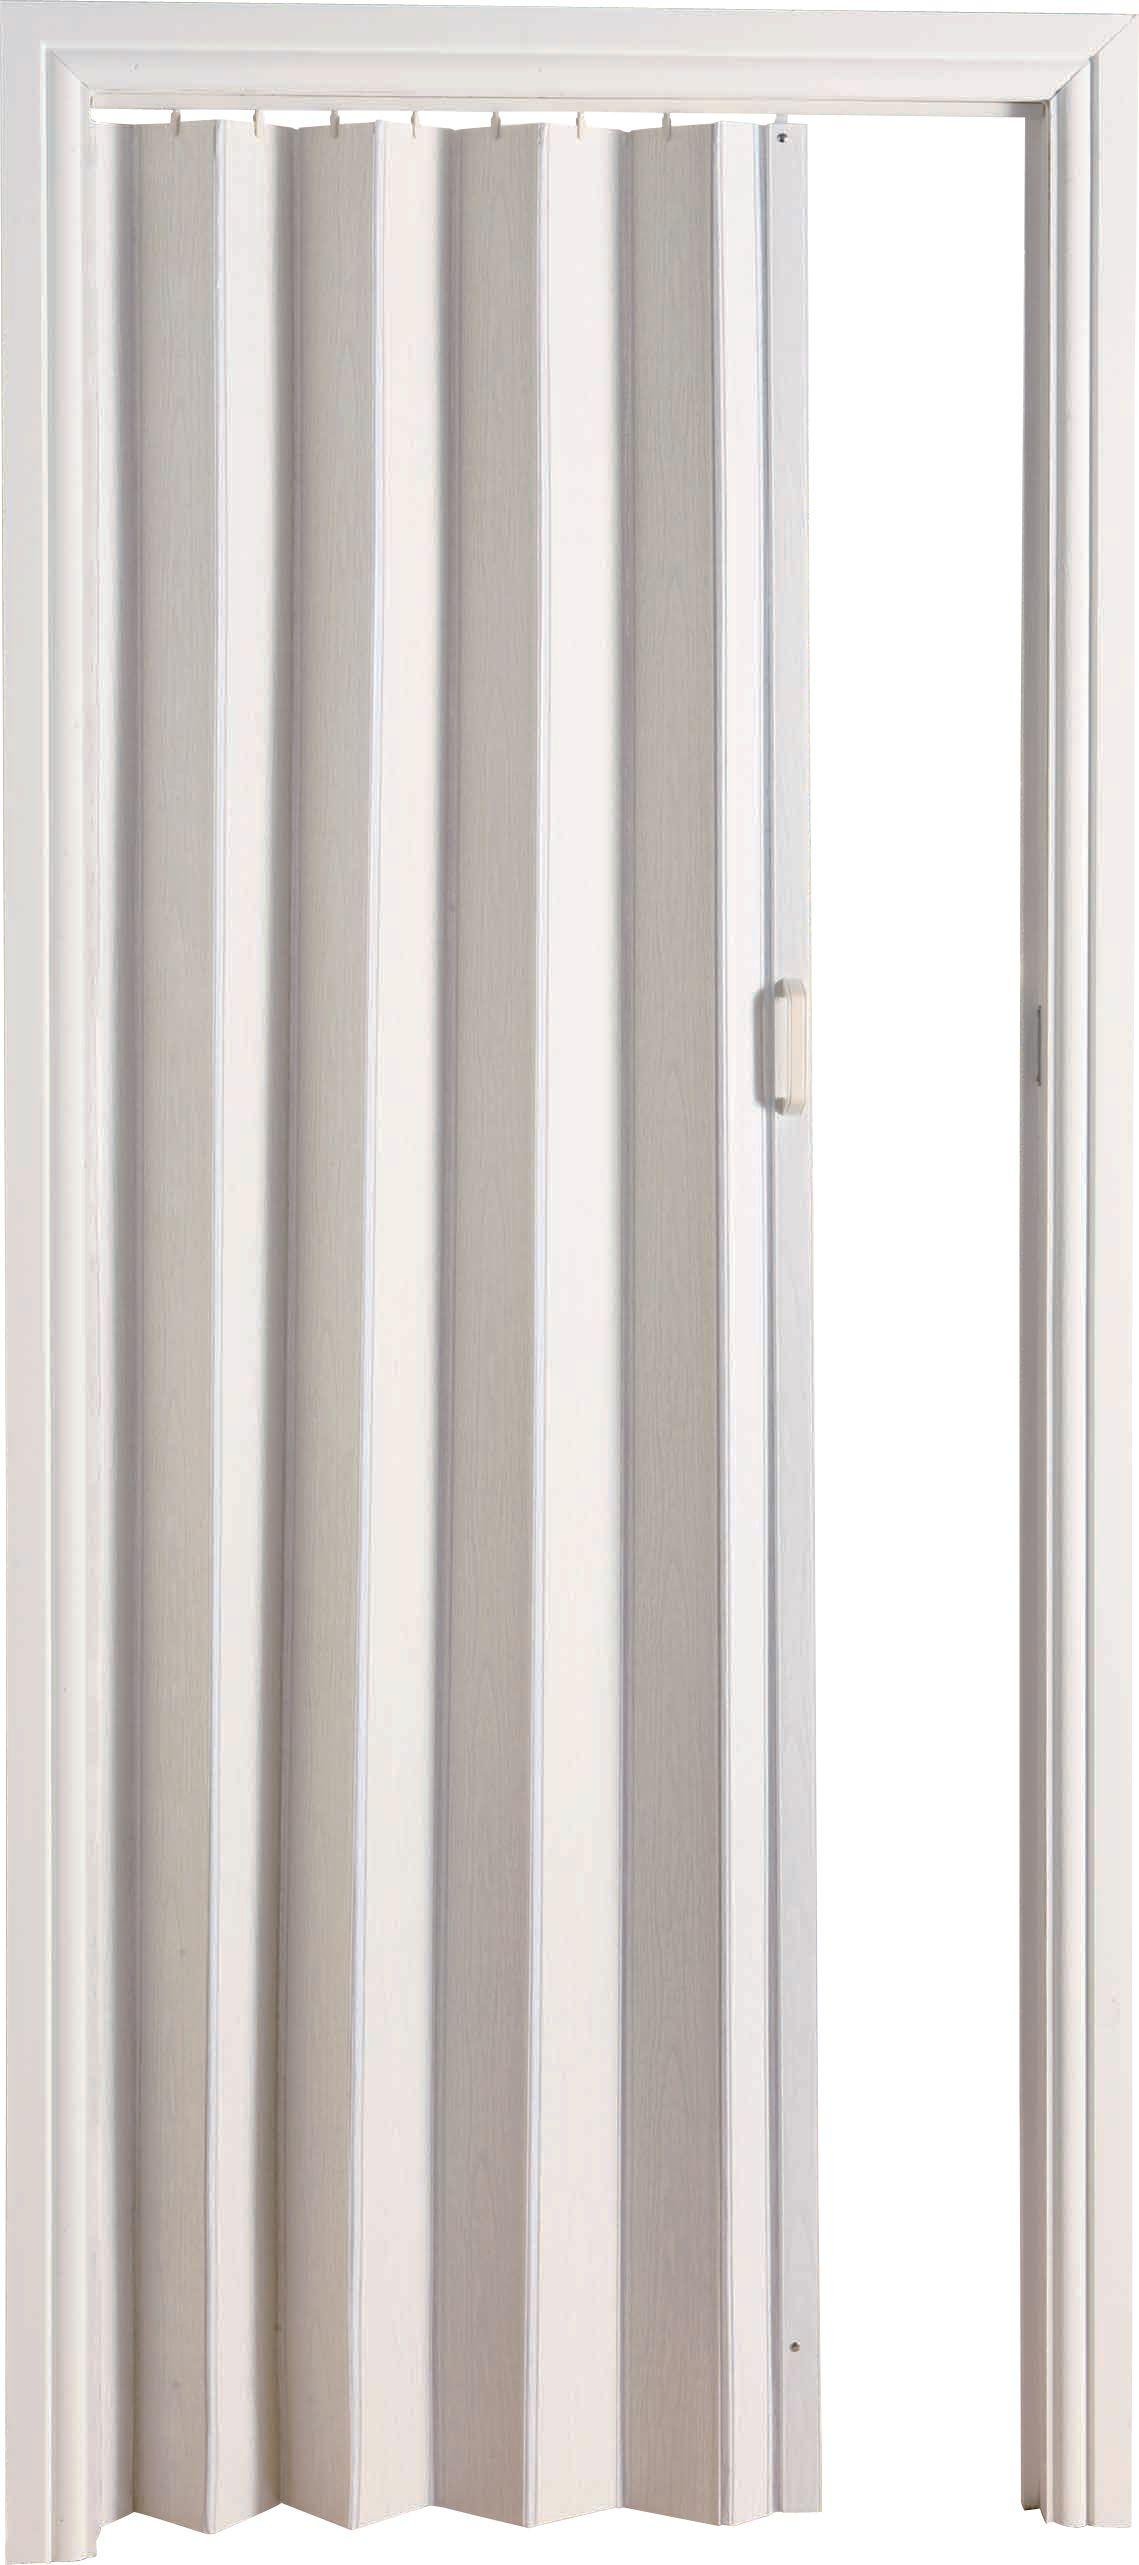 White Oak Effect Folding Door